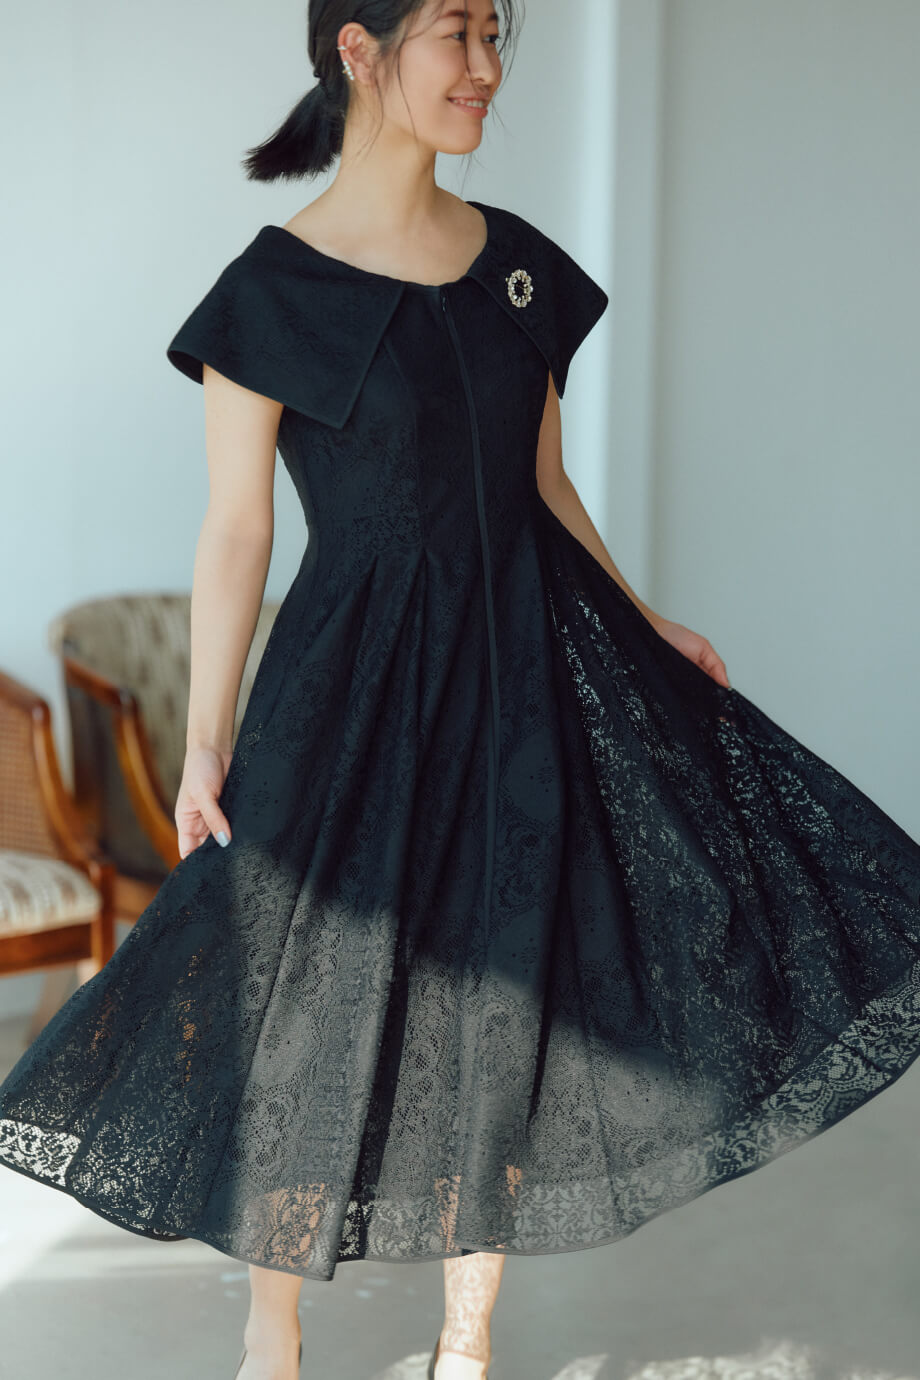 黒いドレスを着た女性モデル画像